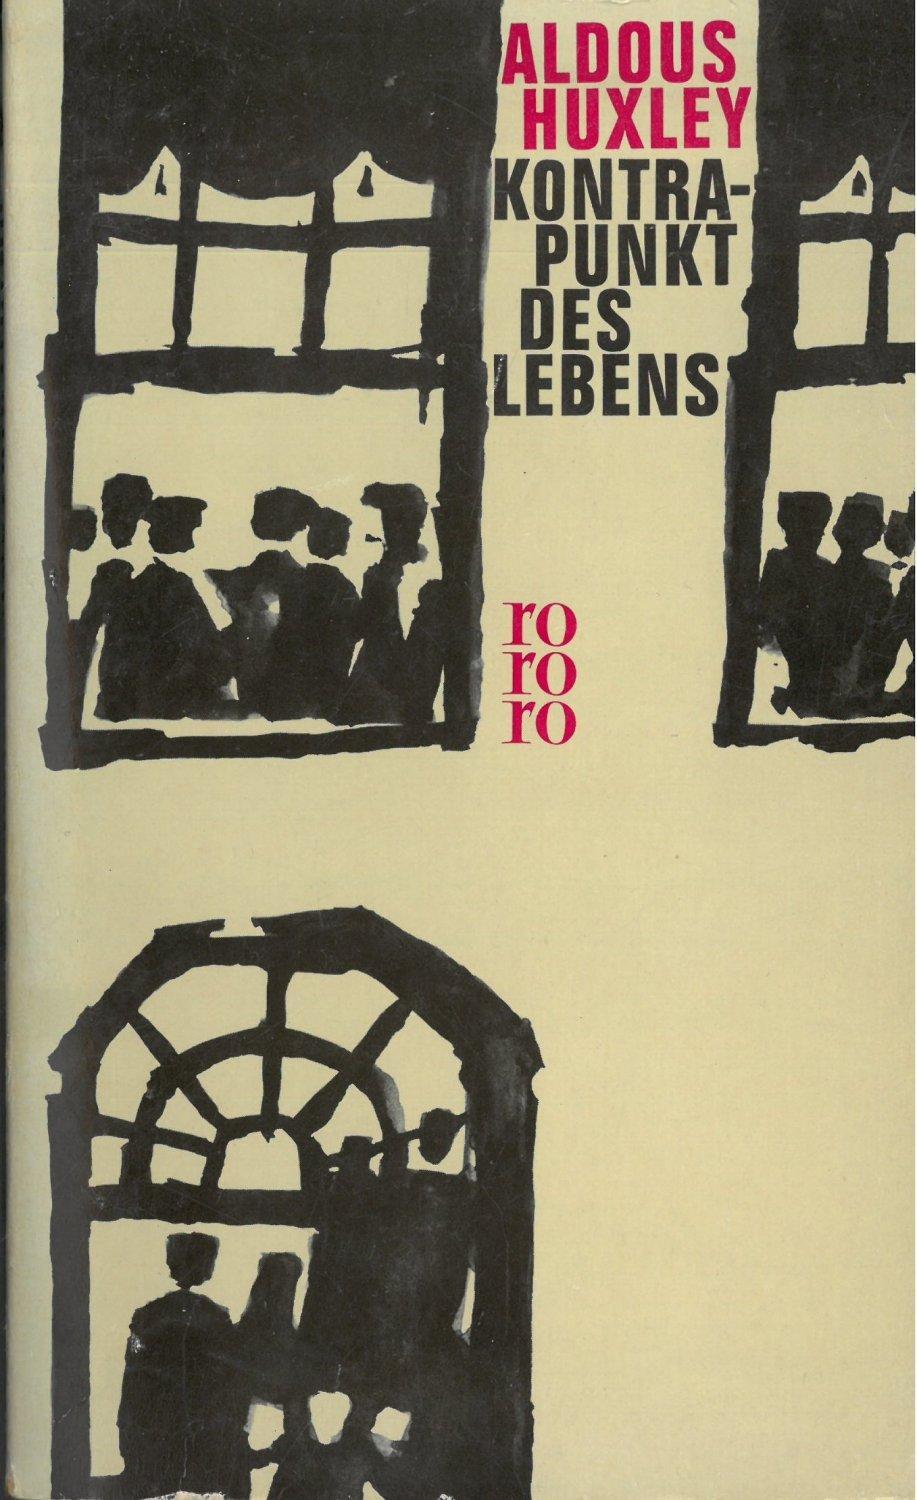 Kontrapunkt des Lebens (German language, 1963, Rowohlt Verlag)